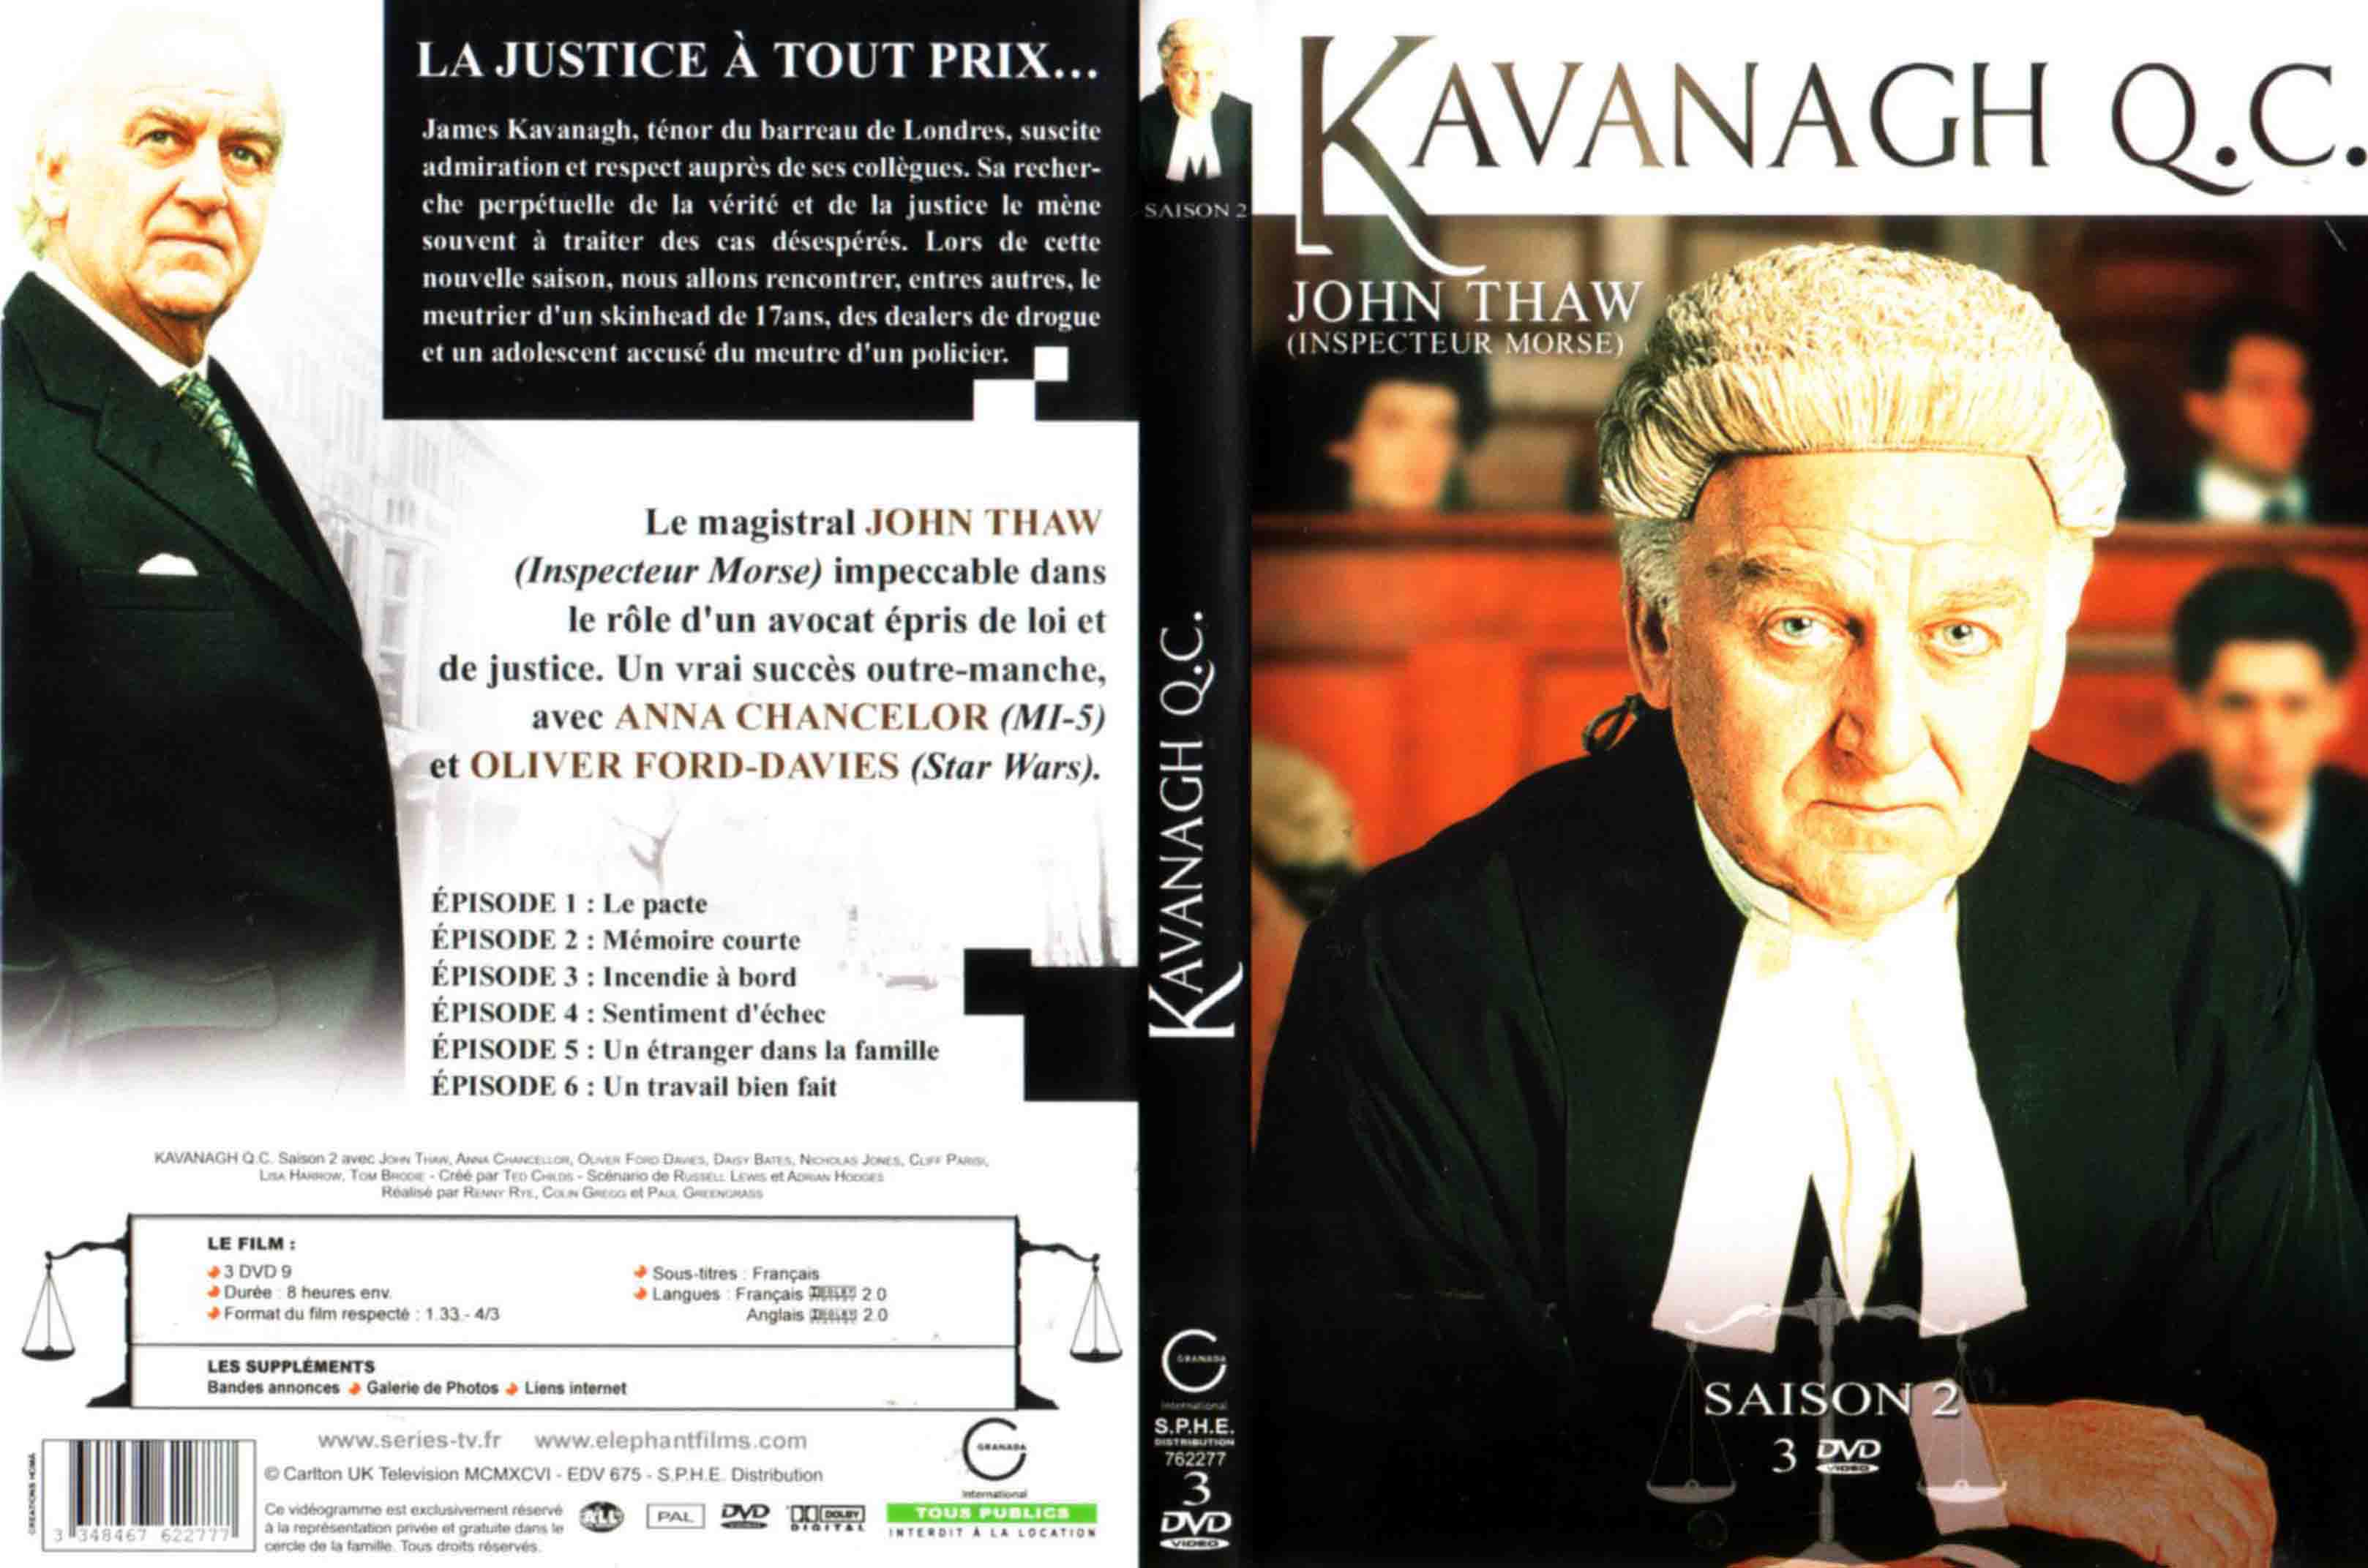 Jaquette DVD kavanagh Q C Inspecteur Morse Saison 2